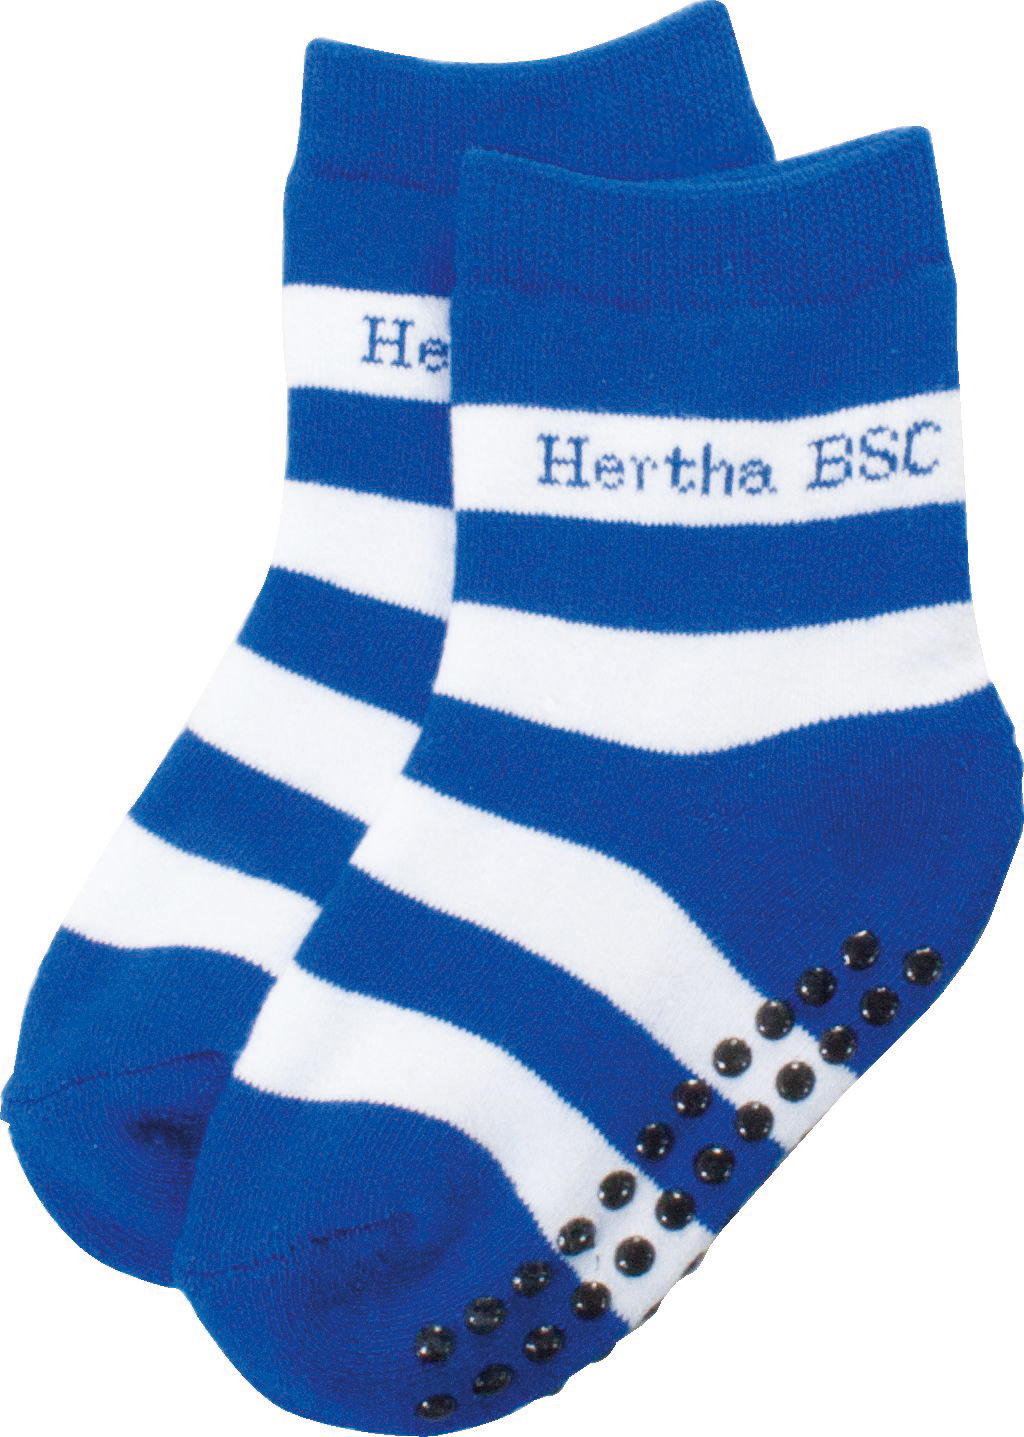 BSC HERTHA BSC Socken Hertha Berlin